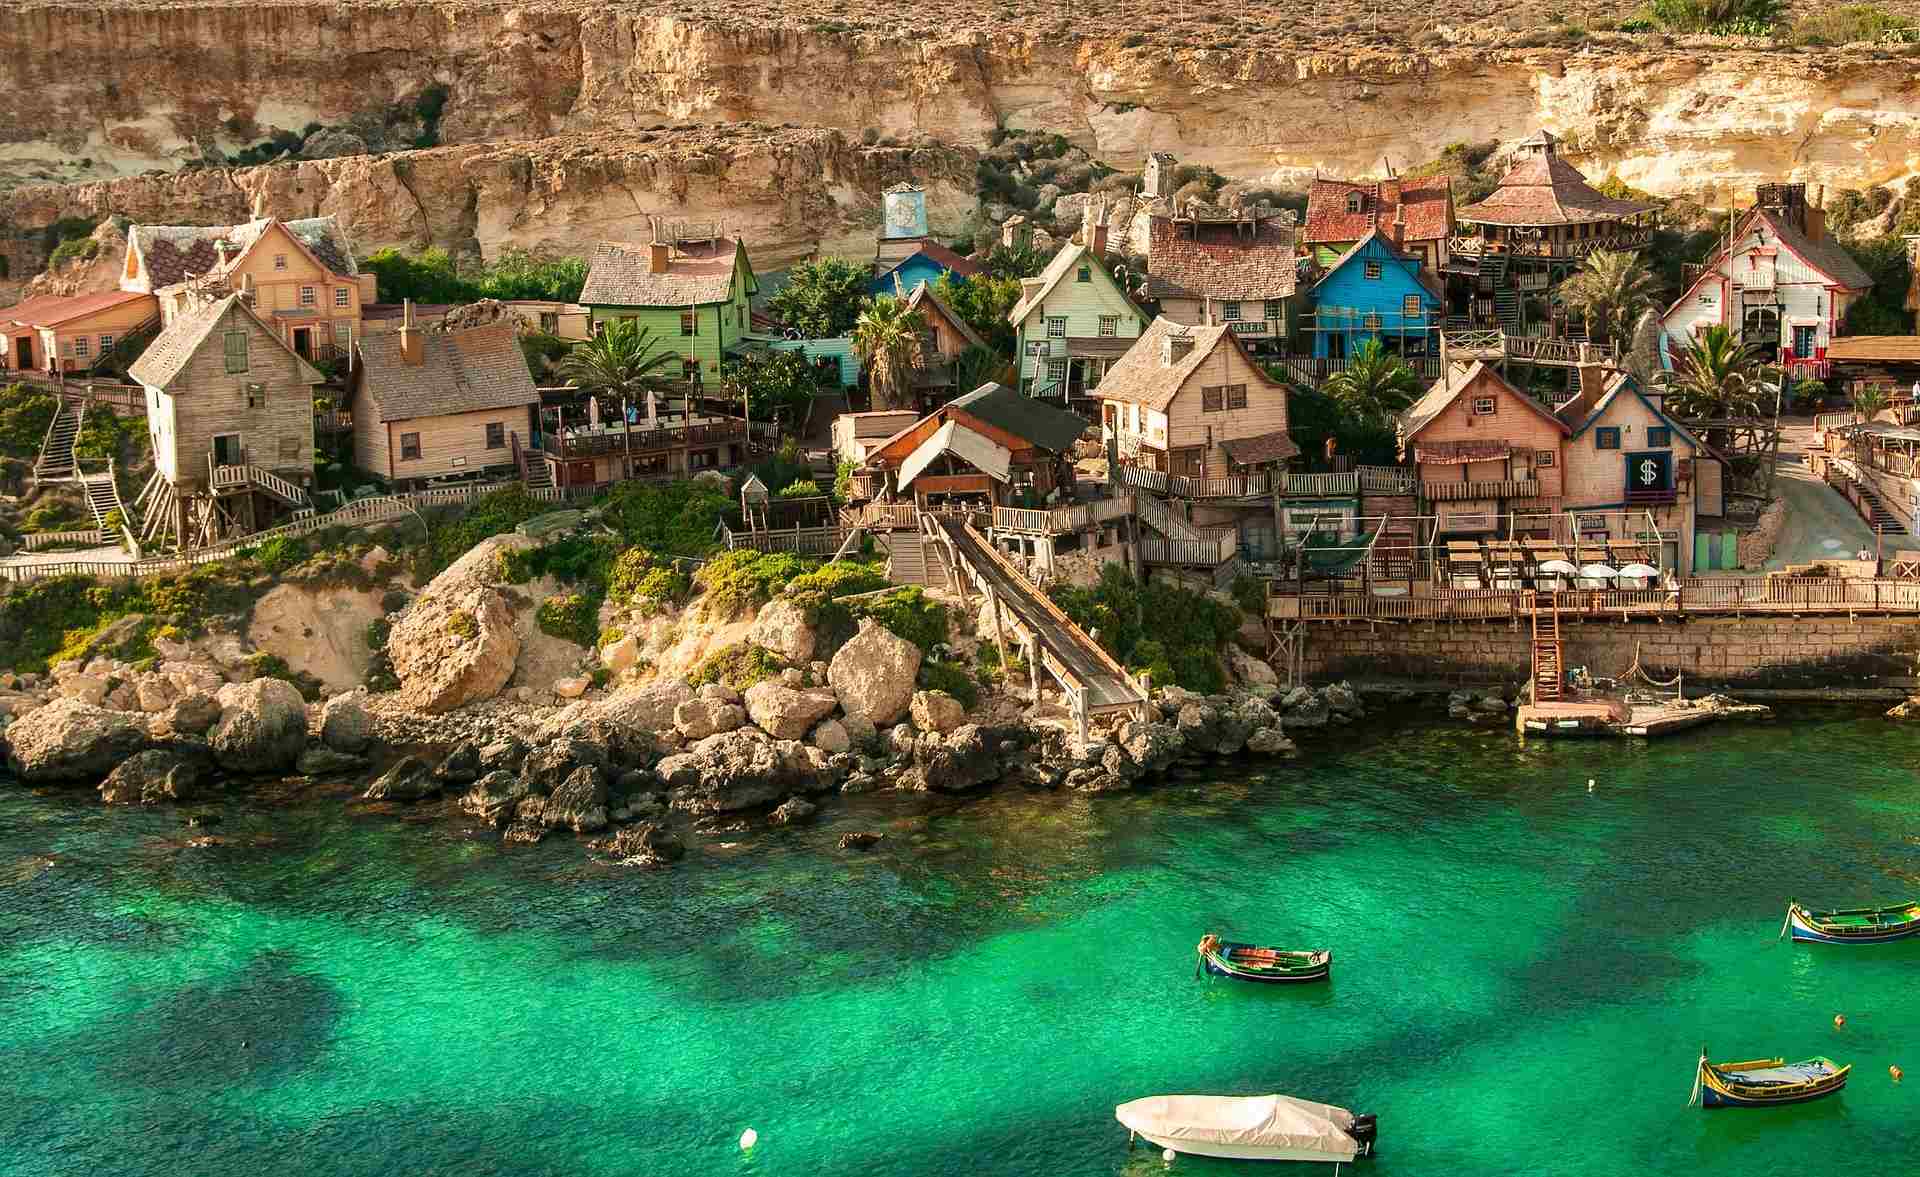 In Bild von der Stadt Malta und dem Meer